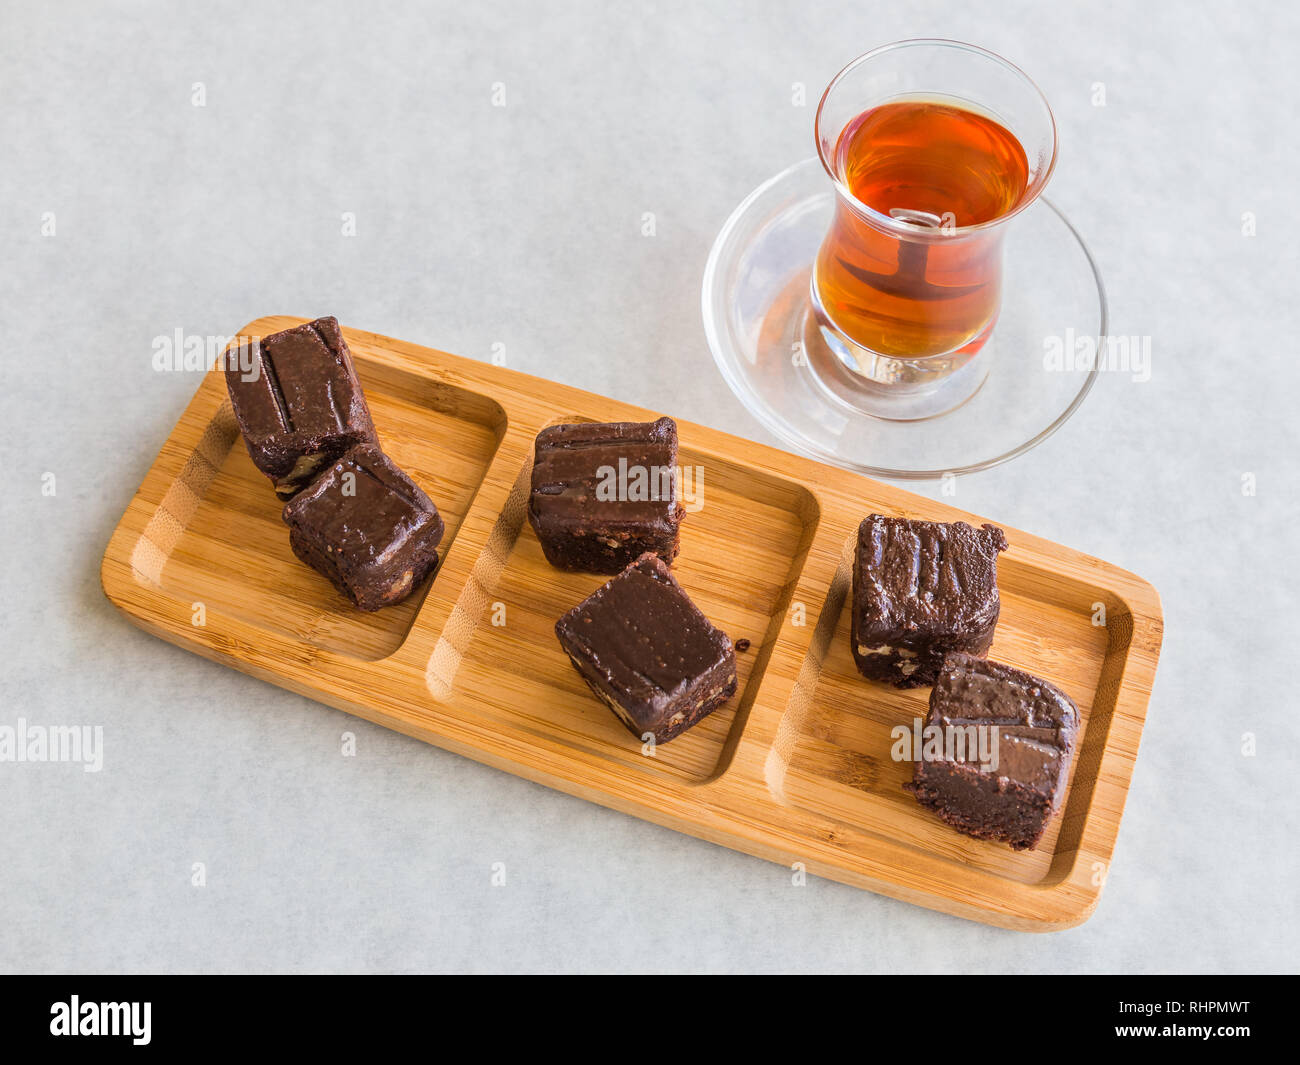 Schokolade Kuchen in Quadrate geschnitten und serviert auf einem Board mit Türkischem Tee in einem tee Glas. Stockfoto